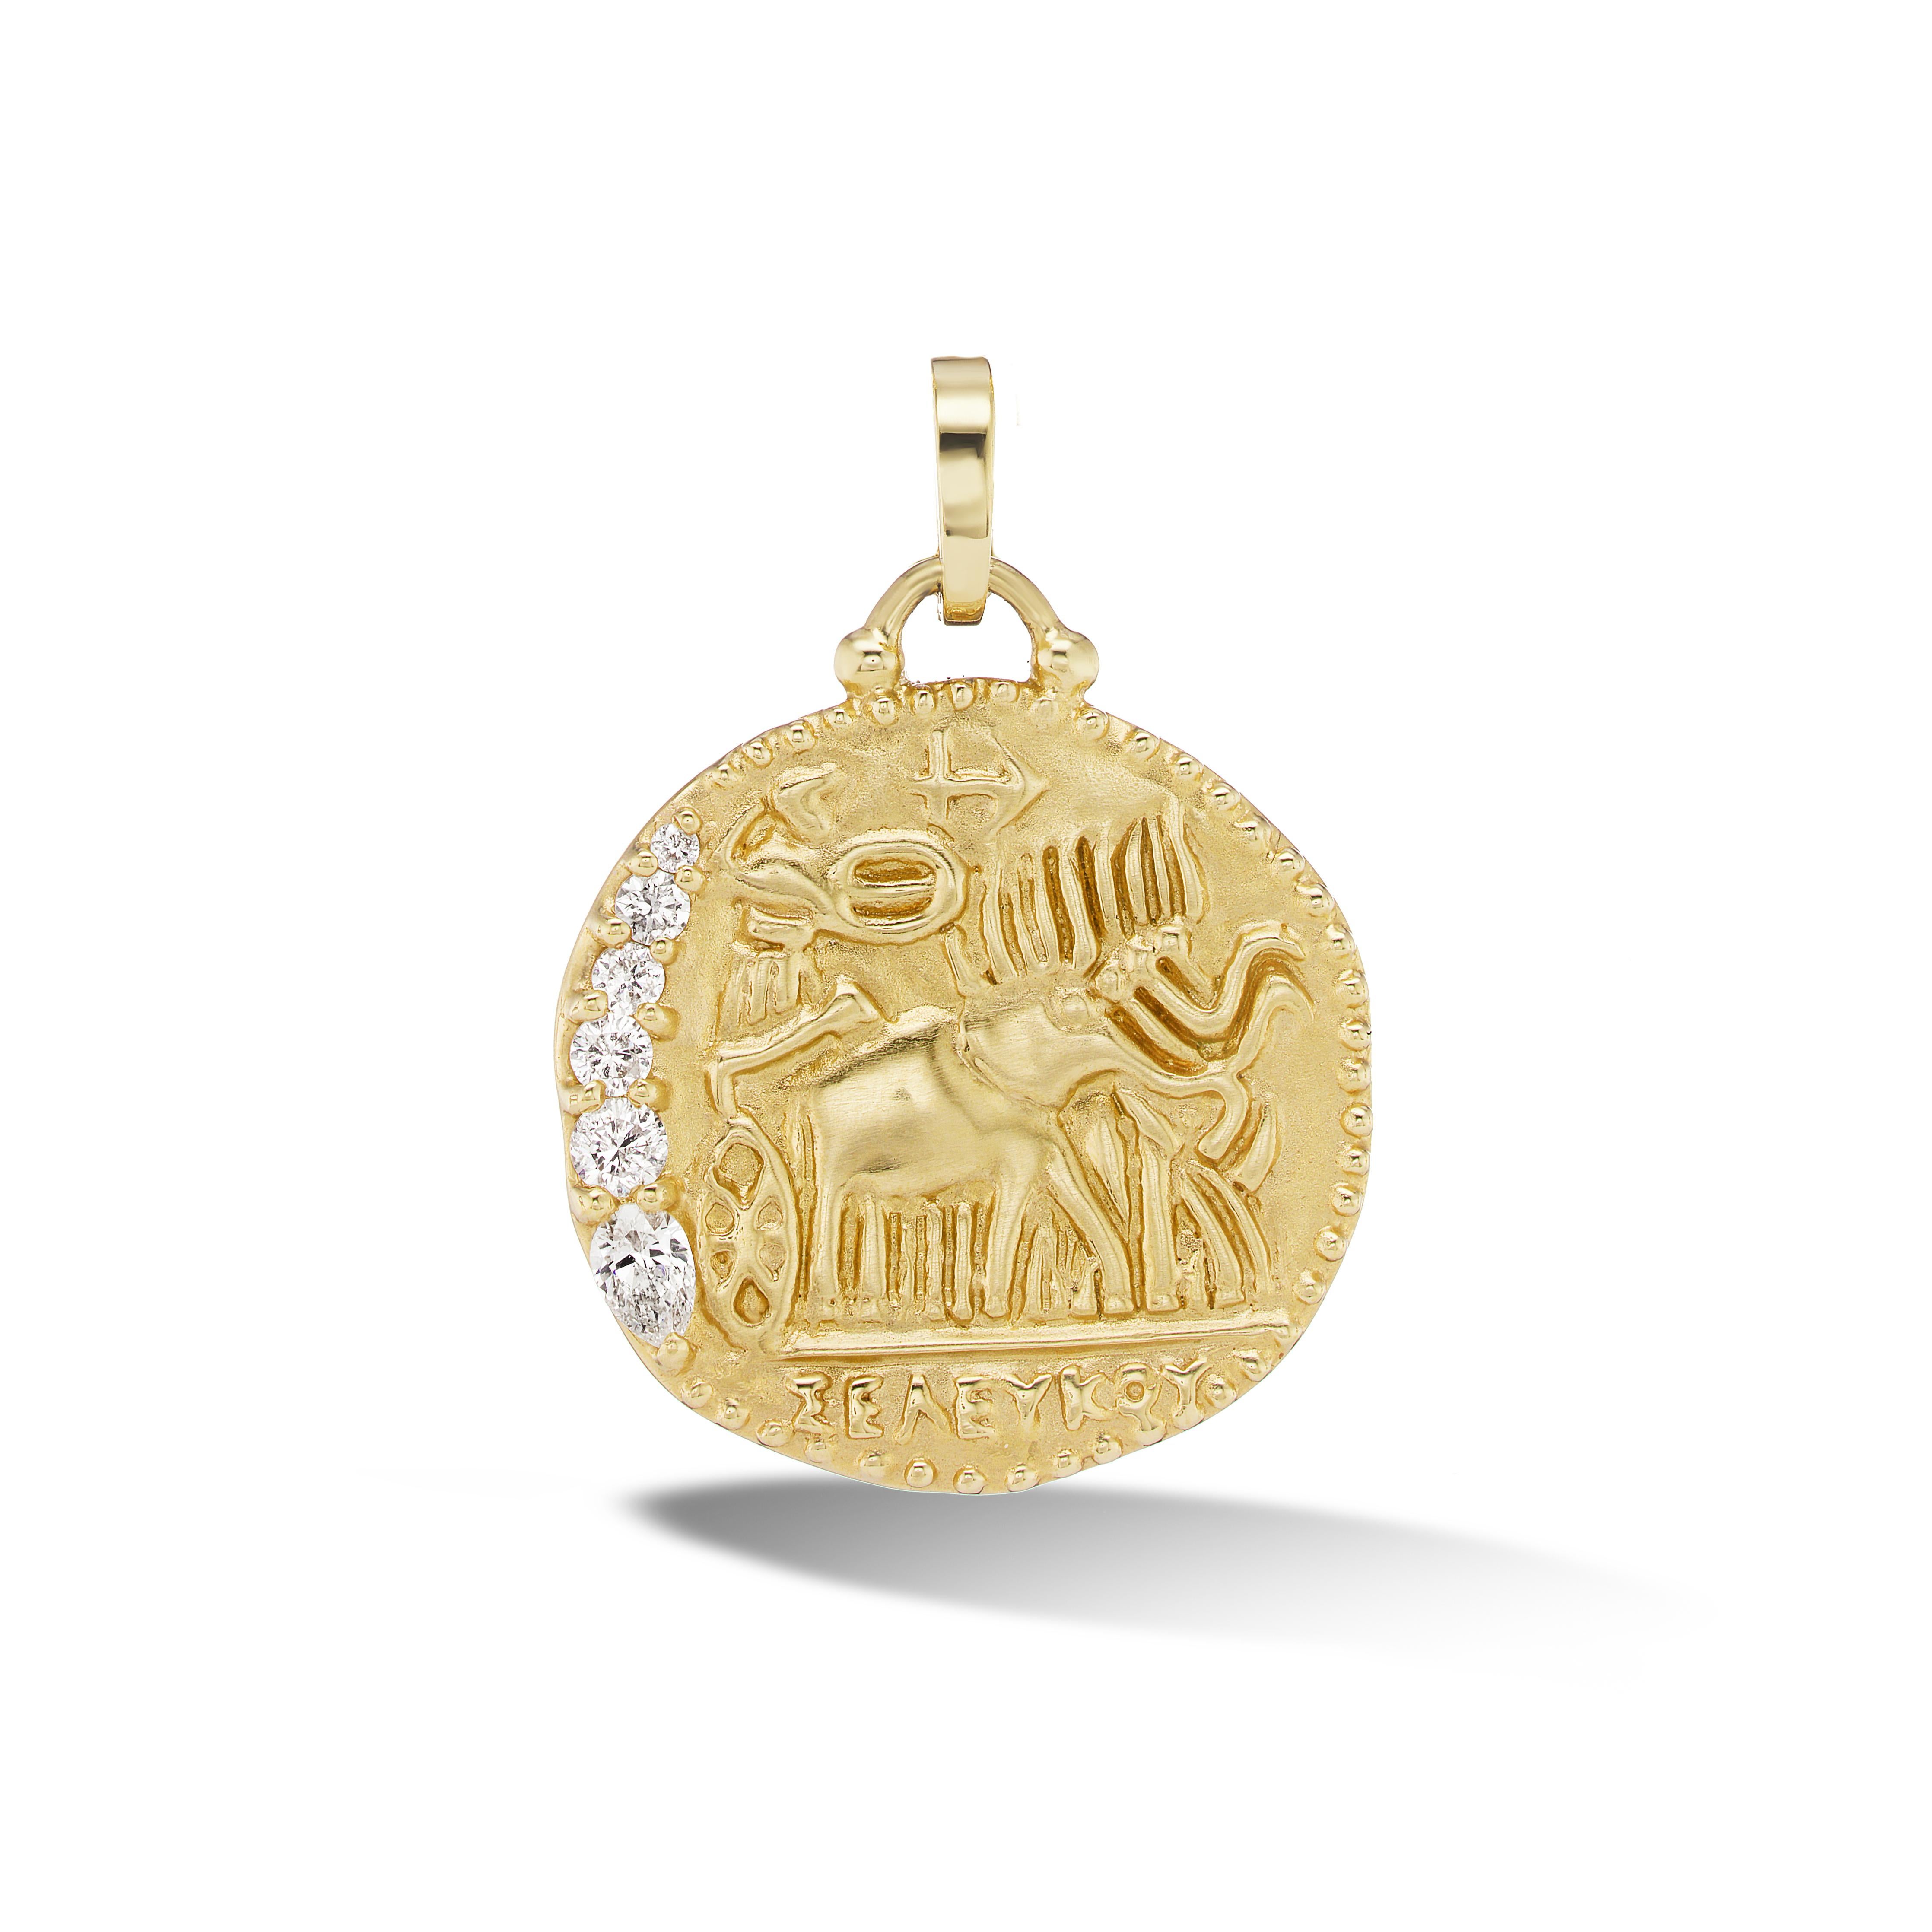 Inspiriert von einer Münze, die ihre Wurzeln im Seleukidenreich hat, zeigt dieser Talisman Athene, die Göttin der Weisheit und der Kriegsstrategie, am Steuer eines Wagens, der von vier Kriegselefanten gezogen wird - Tiere, die in der Kriegsführung